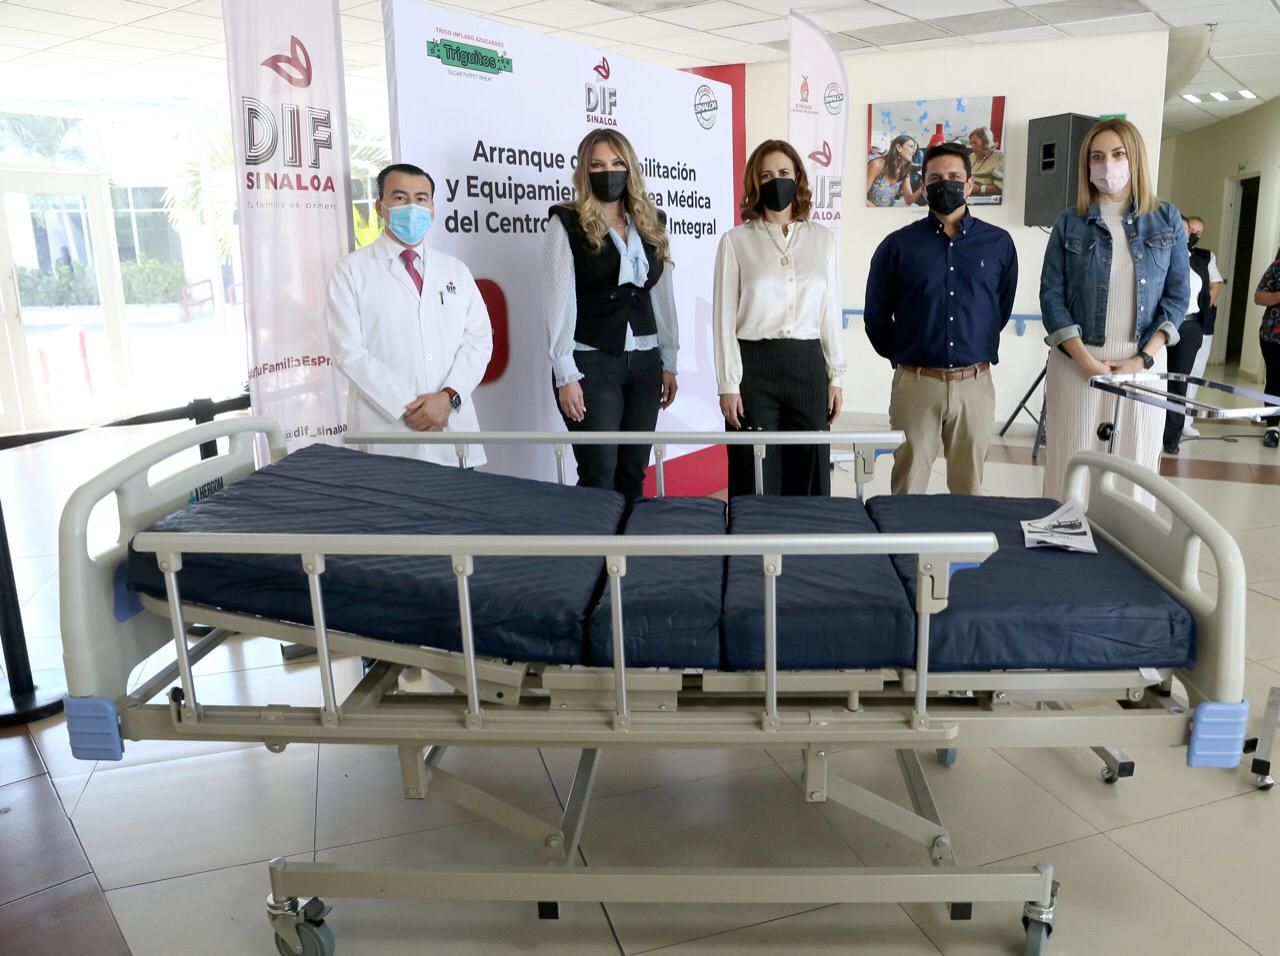 DIF Sinaloa rehabilitará y equipará el área médica del Centro Gerontológico Integral